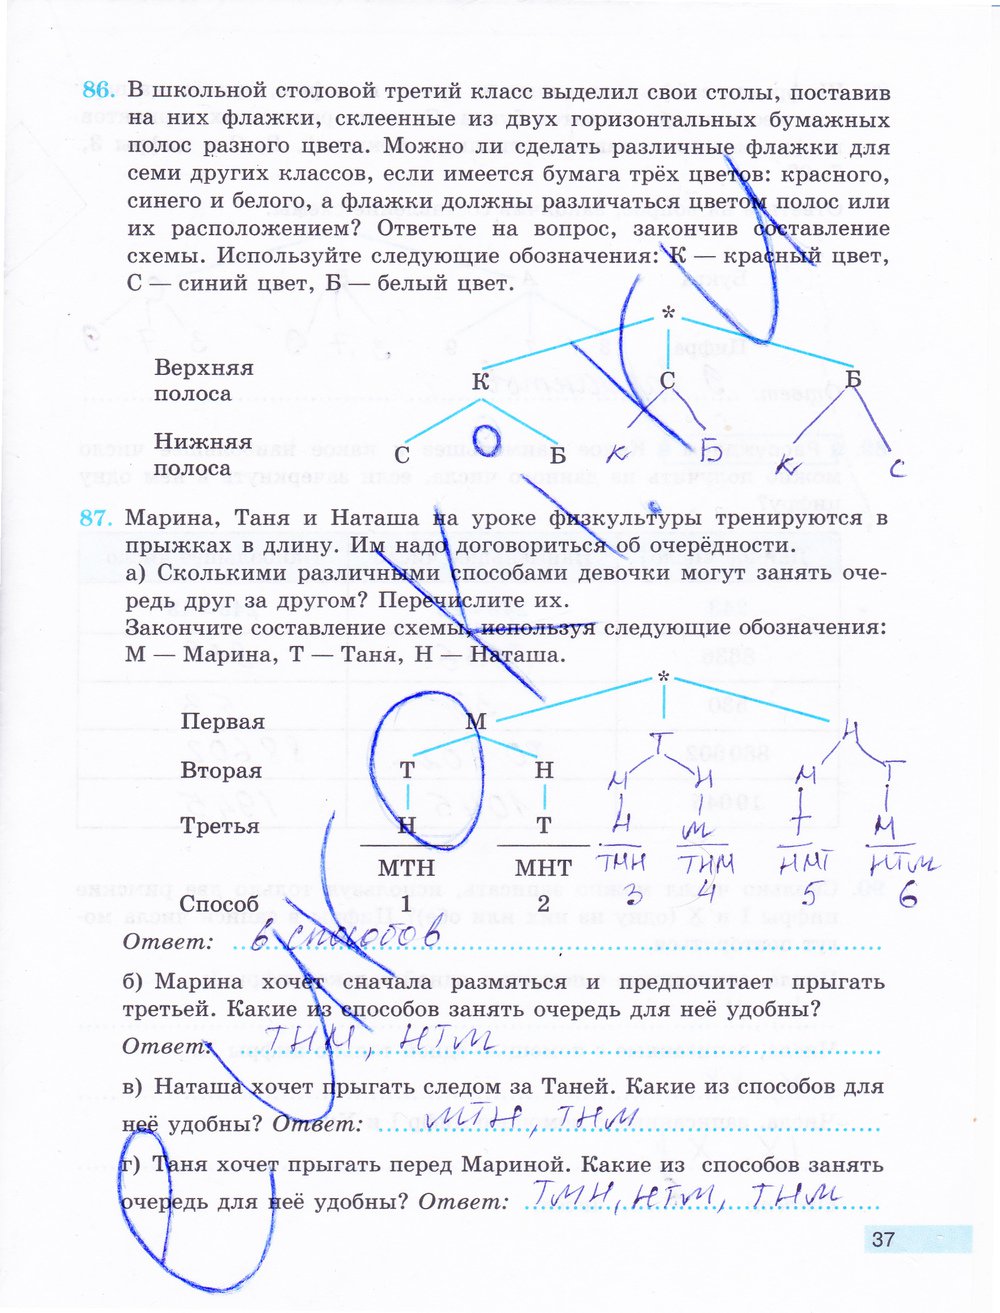 гдз 5 класс рабочая тетрадь часть 1 страница 37 математика Бунимович, Кузнецова